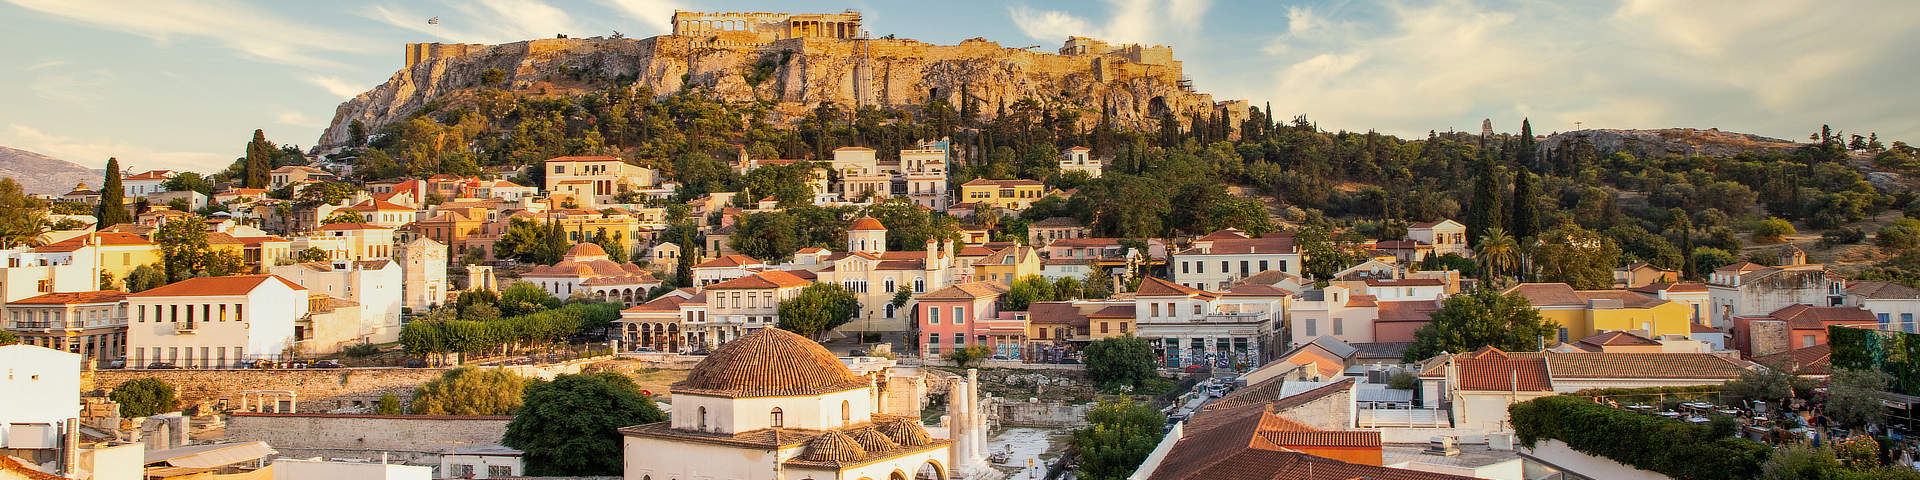 De Akropolis Athene